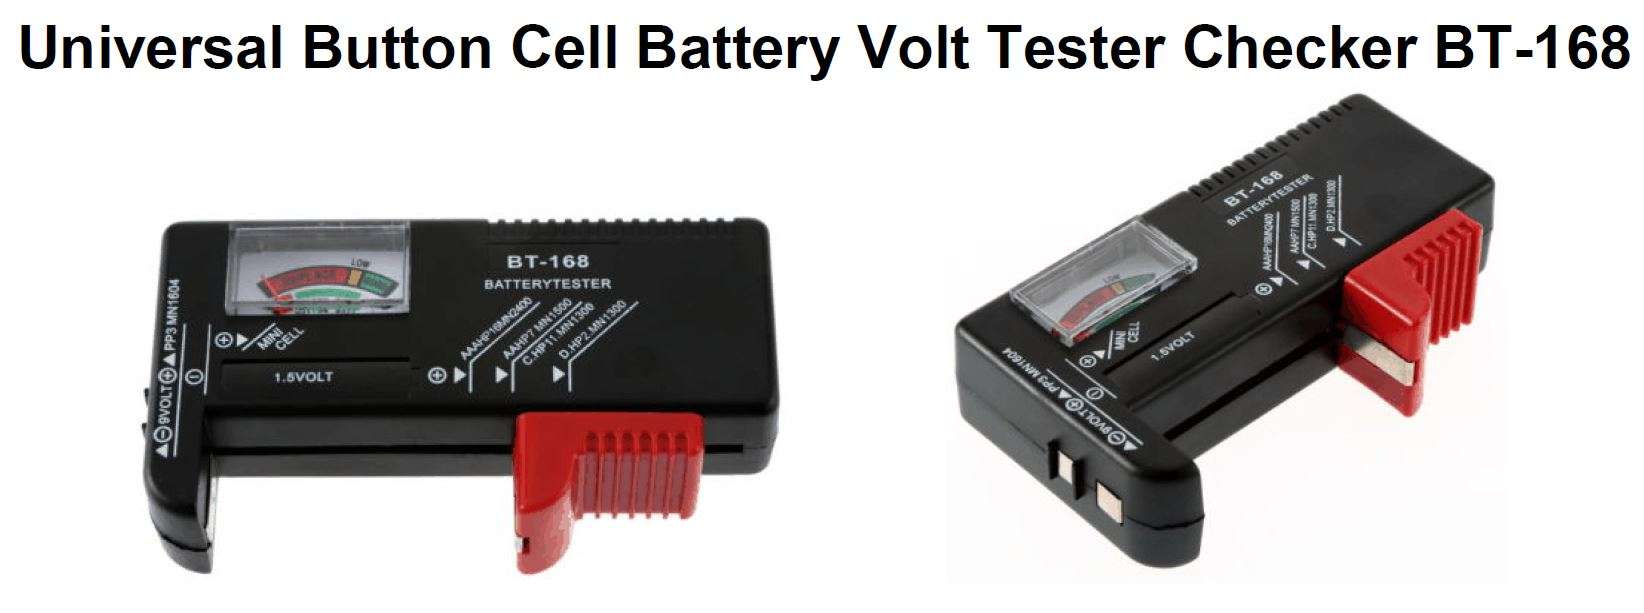 Universal Button Cell Battery Volt Tester Checker BT-168 User Manual